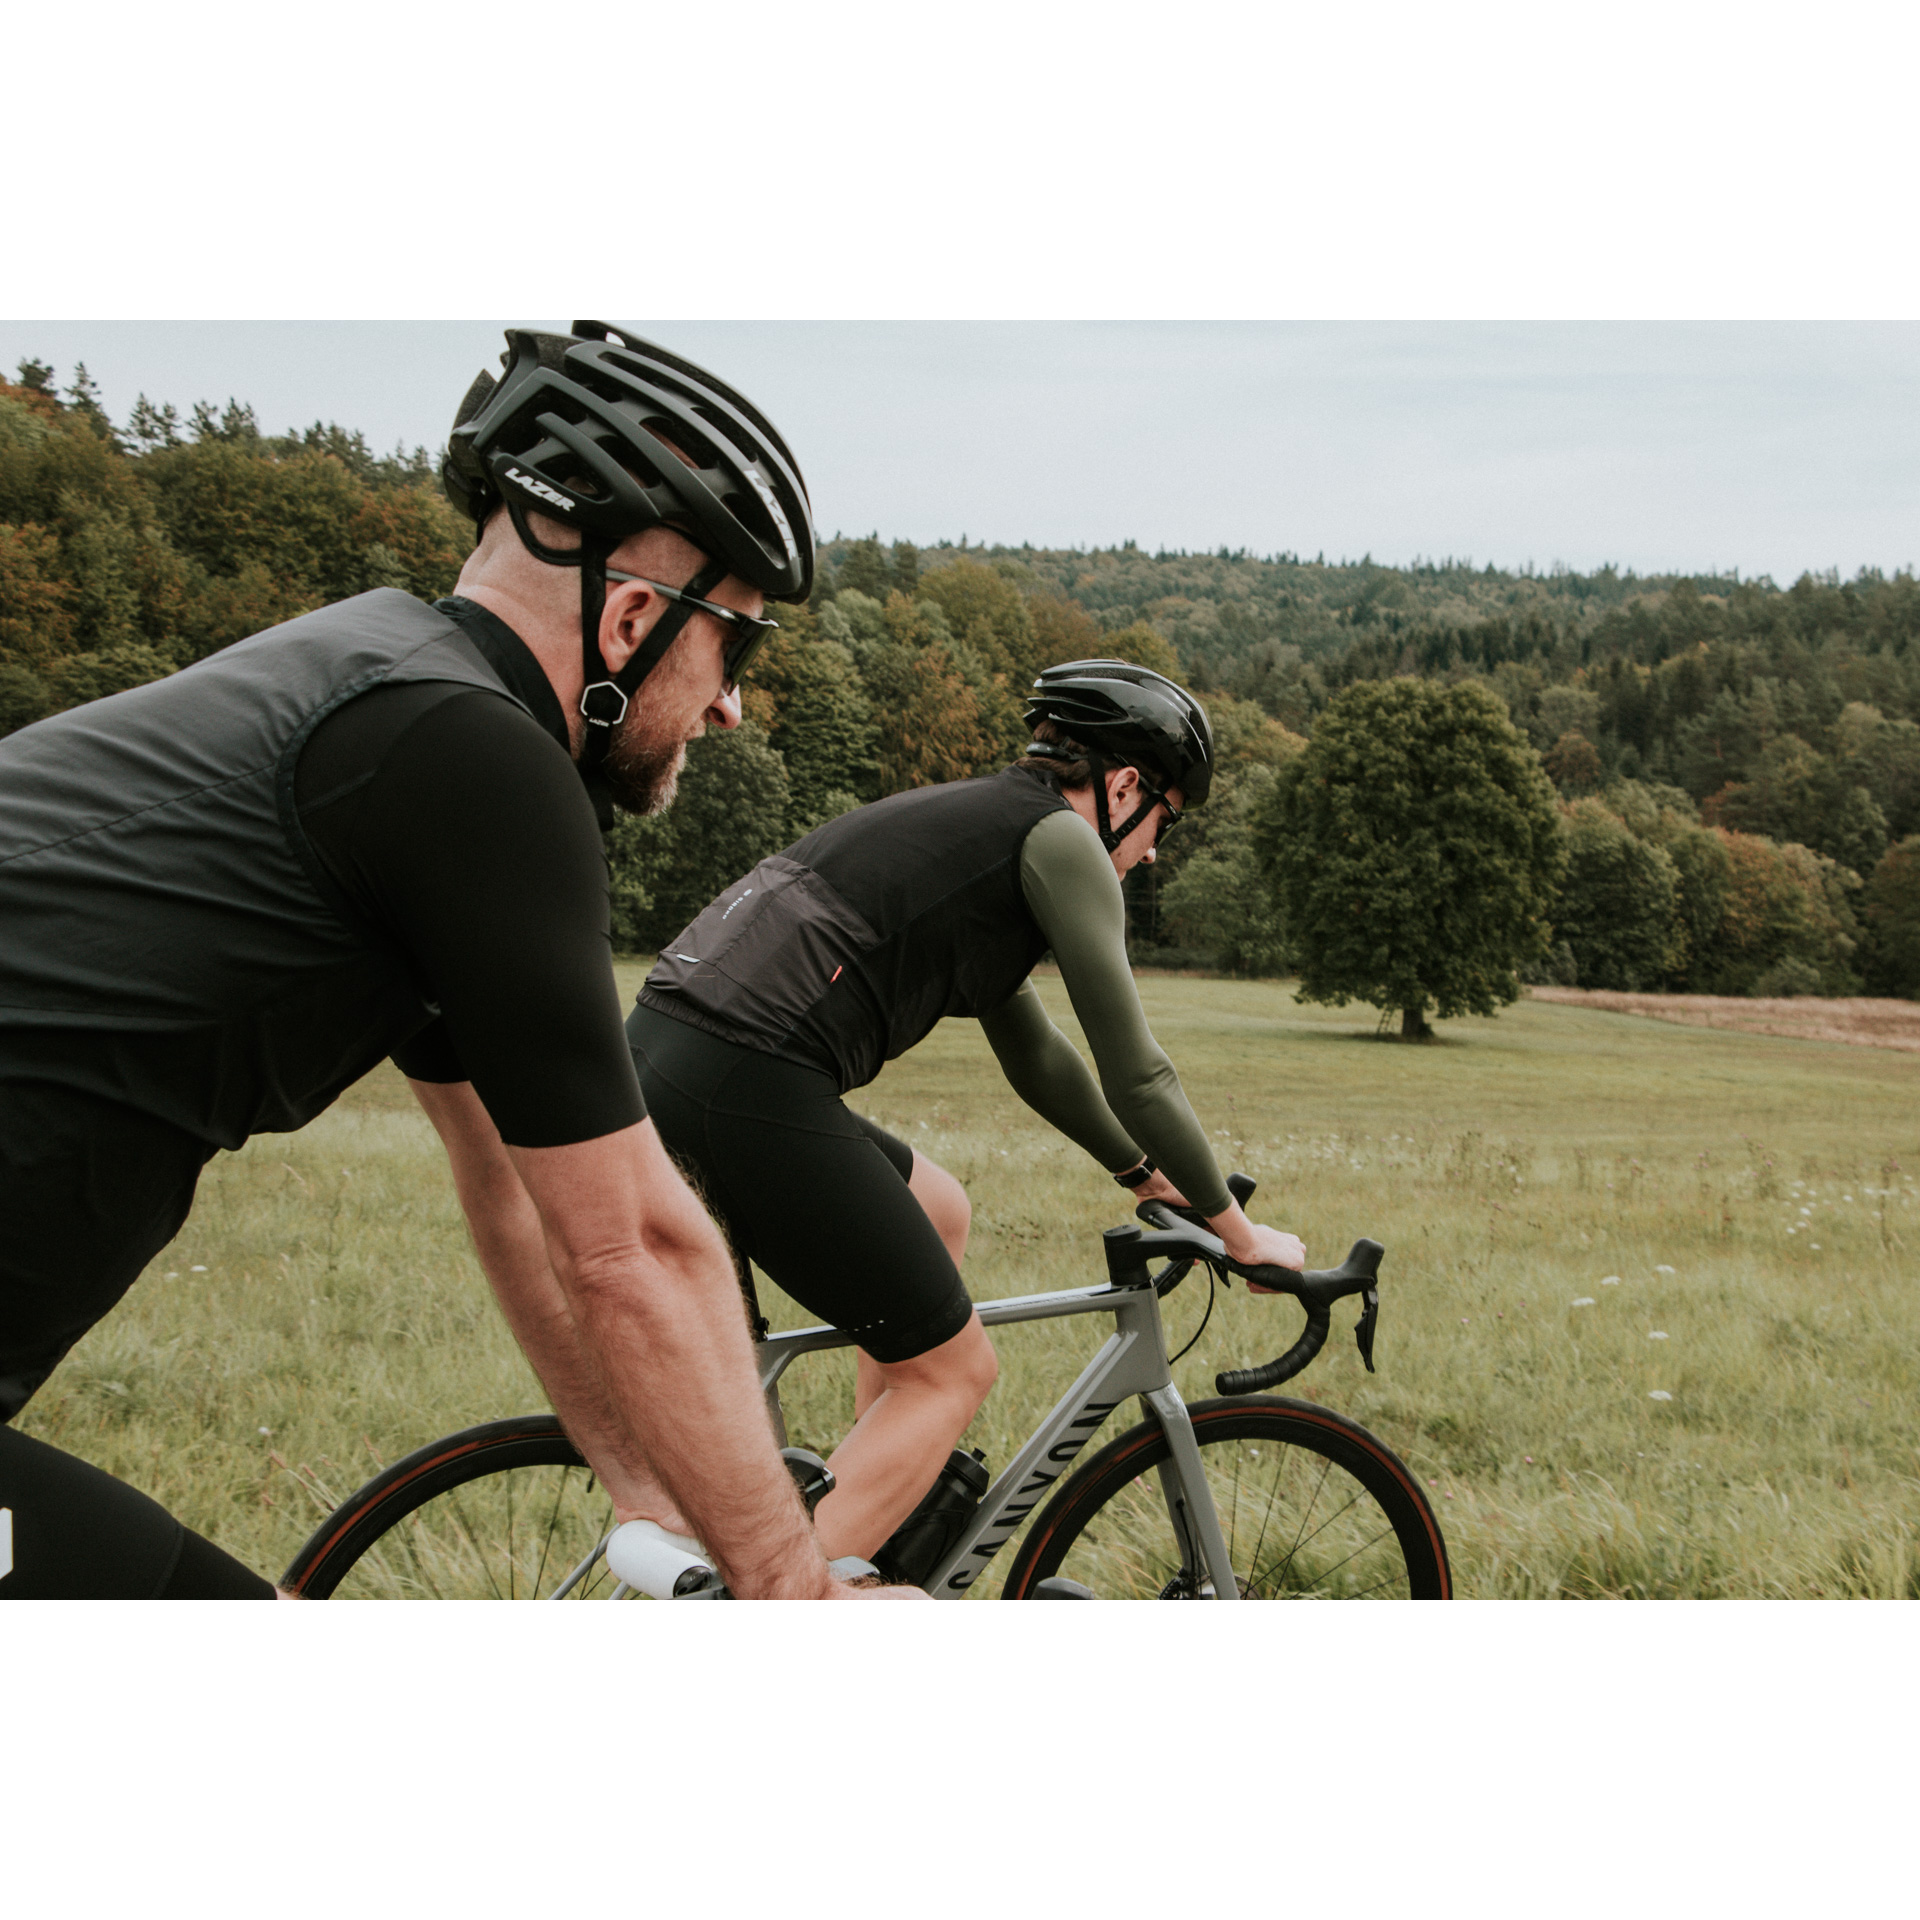 Dwójka rowerzystów w czarnych strojach i kaskach jadąca na rowerach na tle zielonej polany i gęstego lasu w oddali  